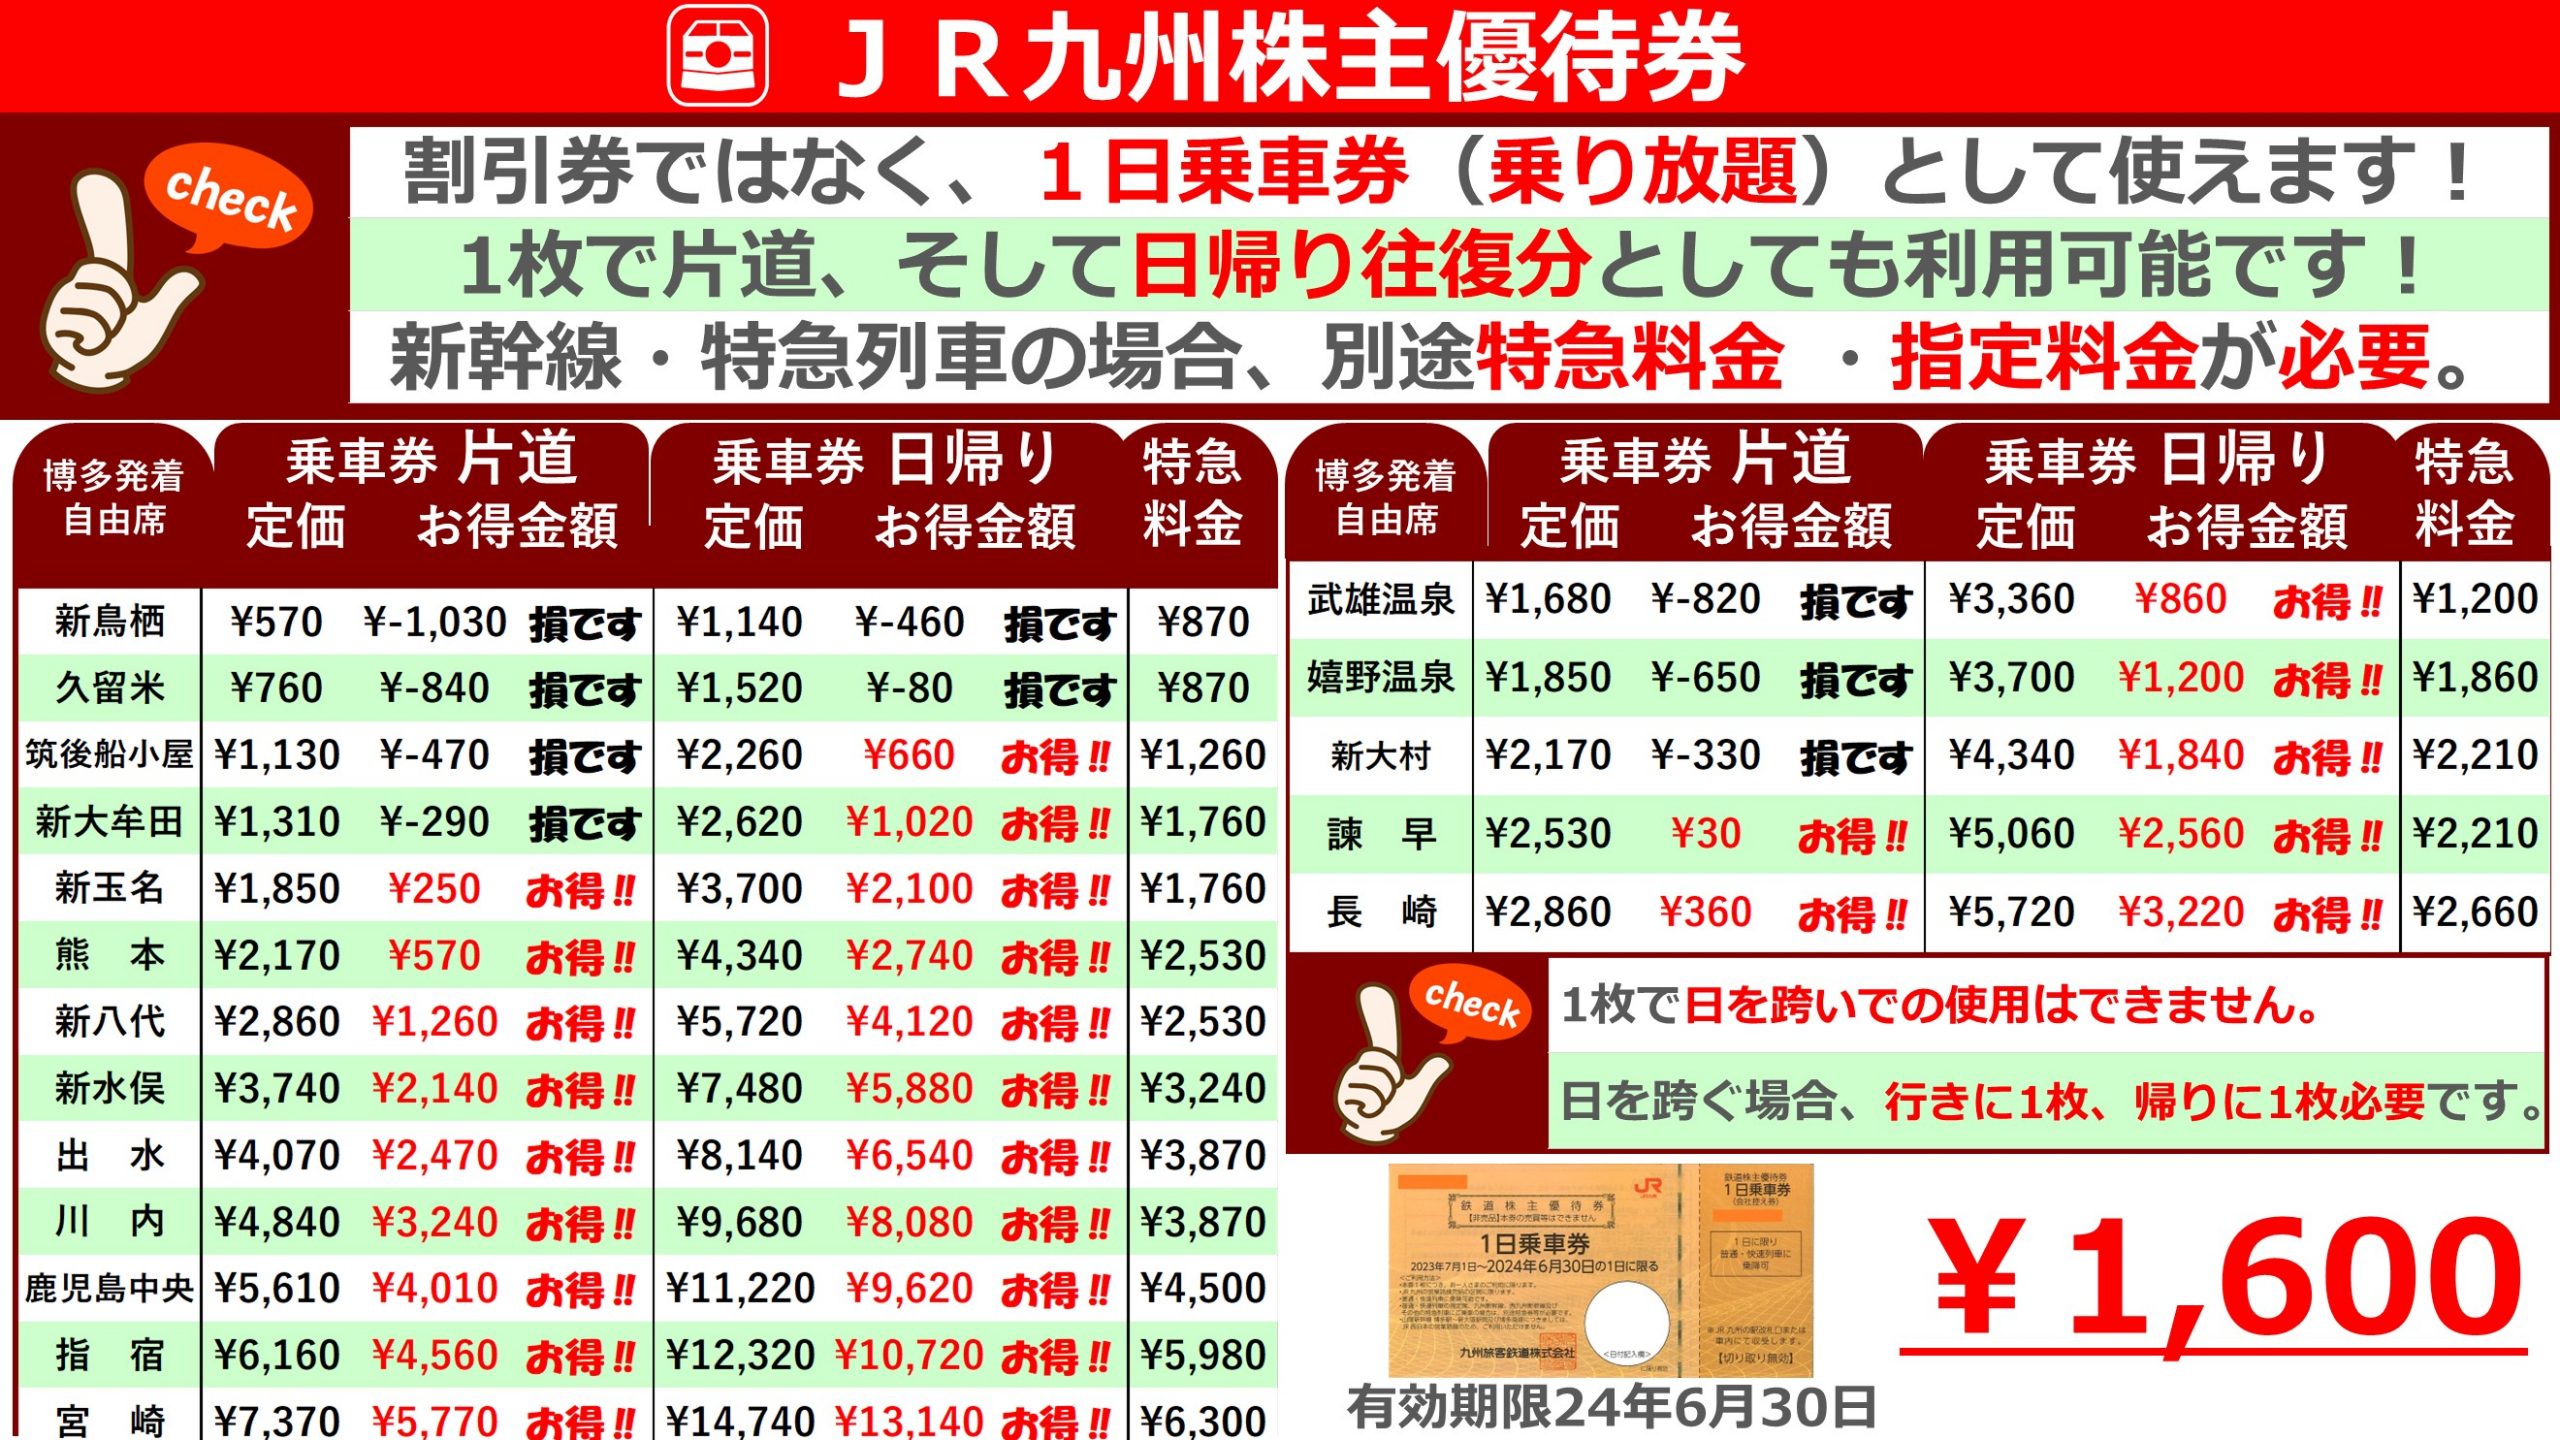 JR九州旅客鉄道株主優待 1日乗車券